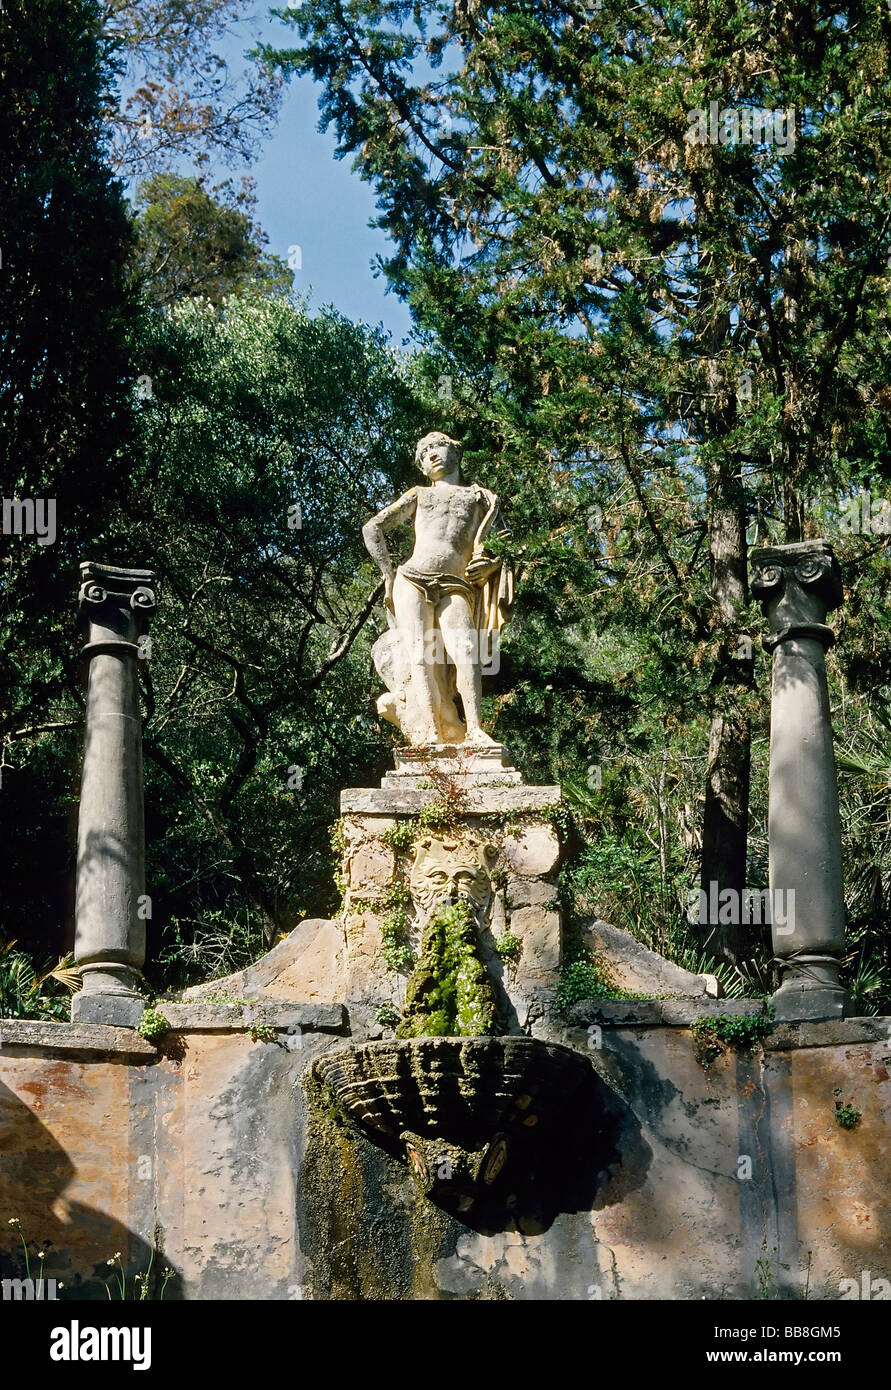 Fontaine et statue en haut d'un escalier de style Renaissance, la Raixa Gardens, près de Bunyola, Serra de Tramuntana mountain r Banque D'Images